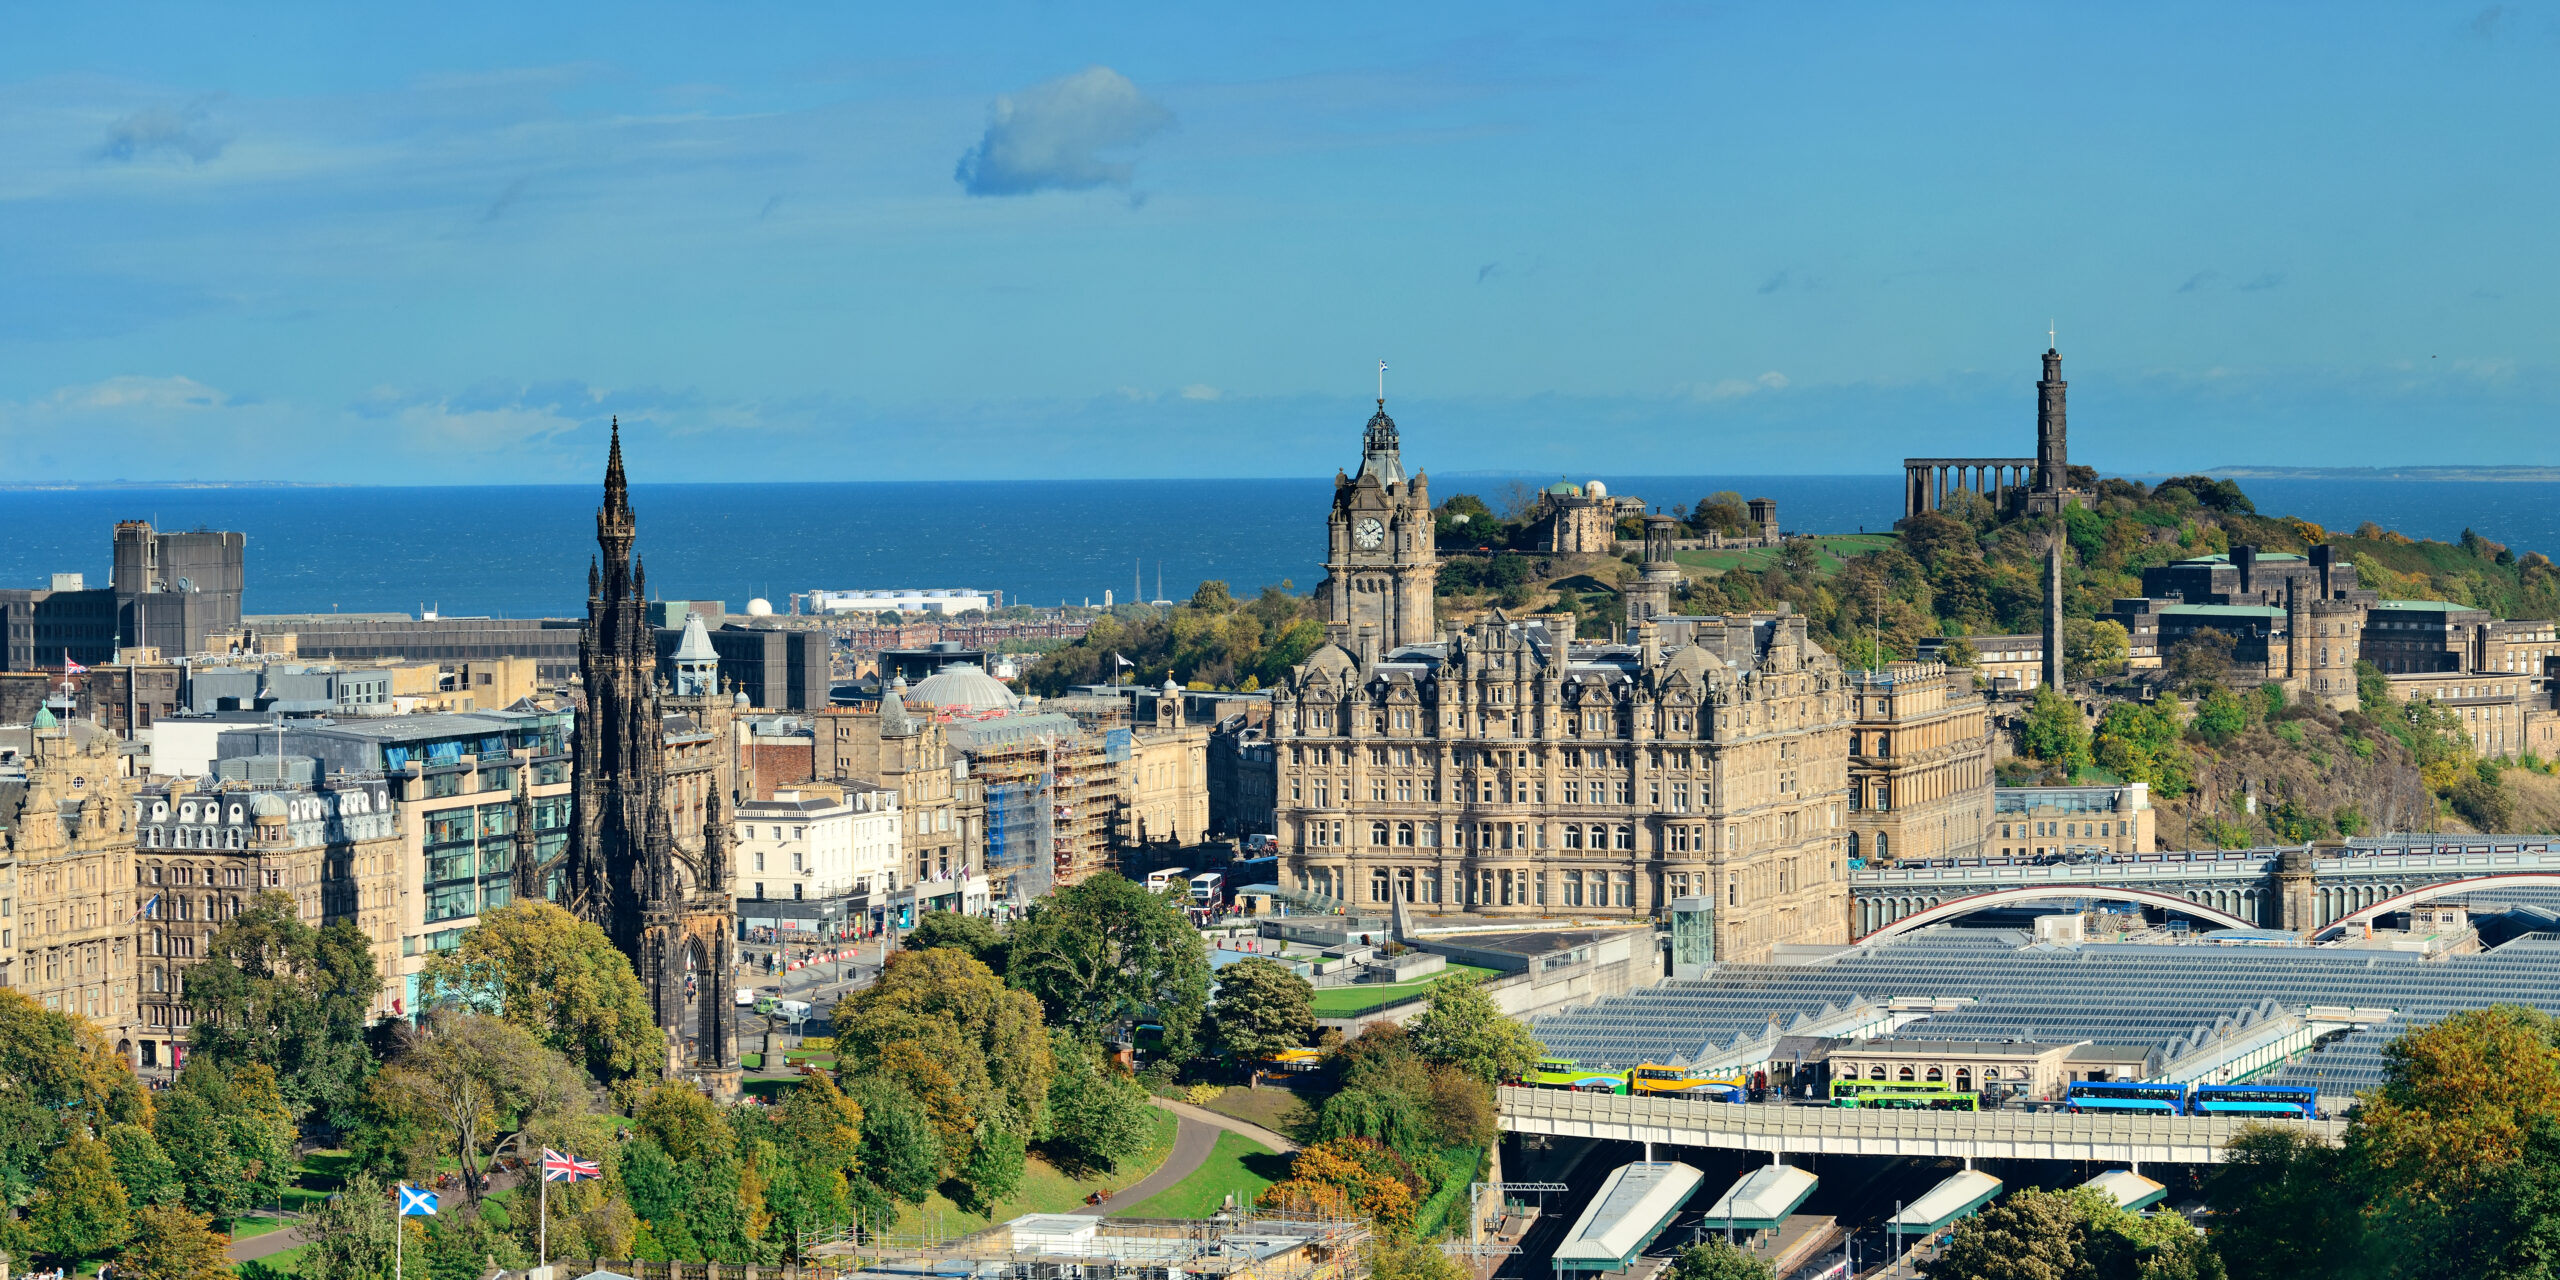 Descubre los encantos de Edimburgo, la ciudad más emblemática del Reino Unido